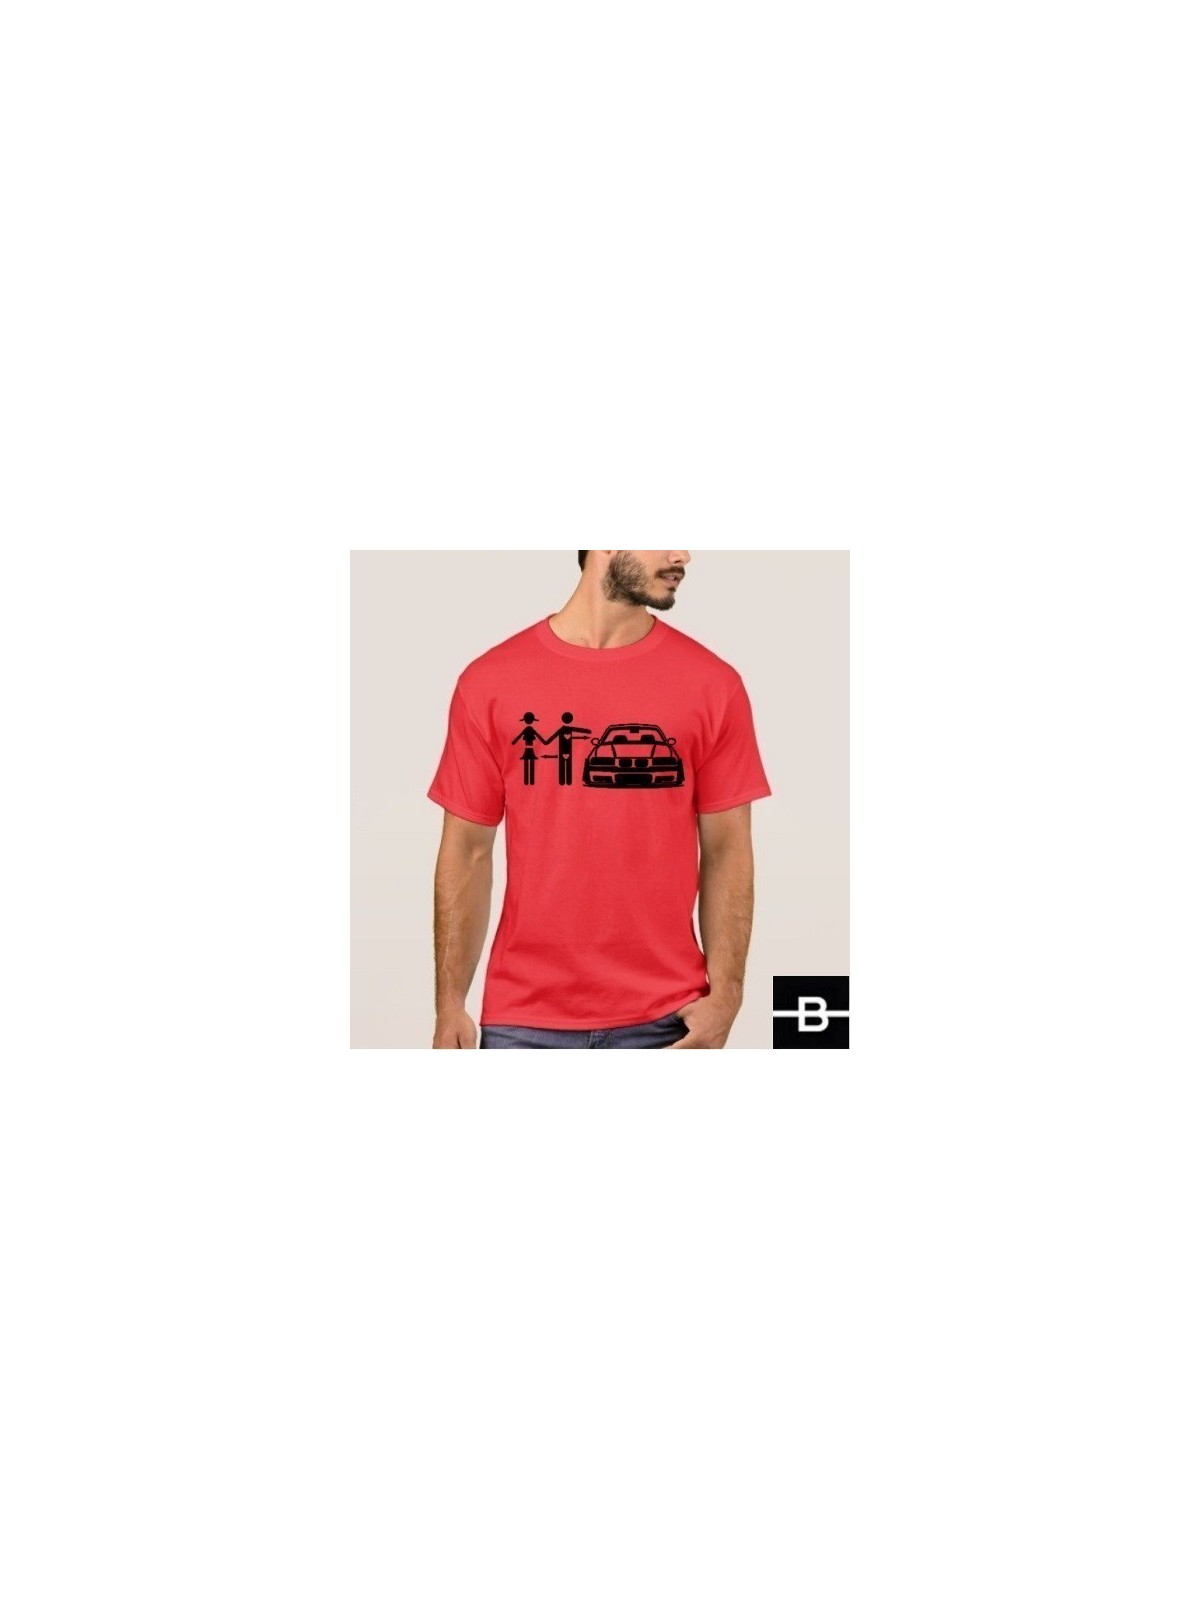 T-shirt męski wzór 1 czerwony